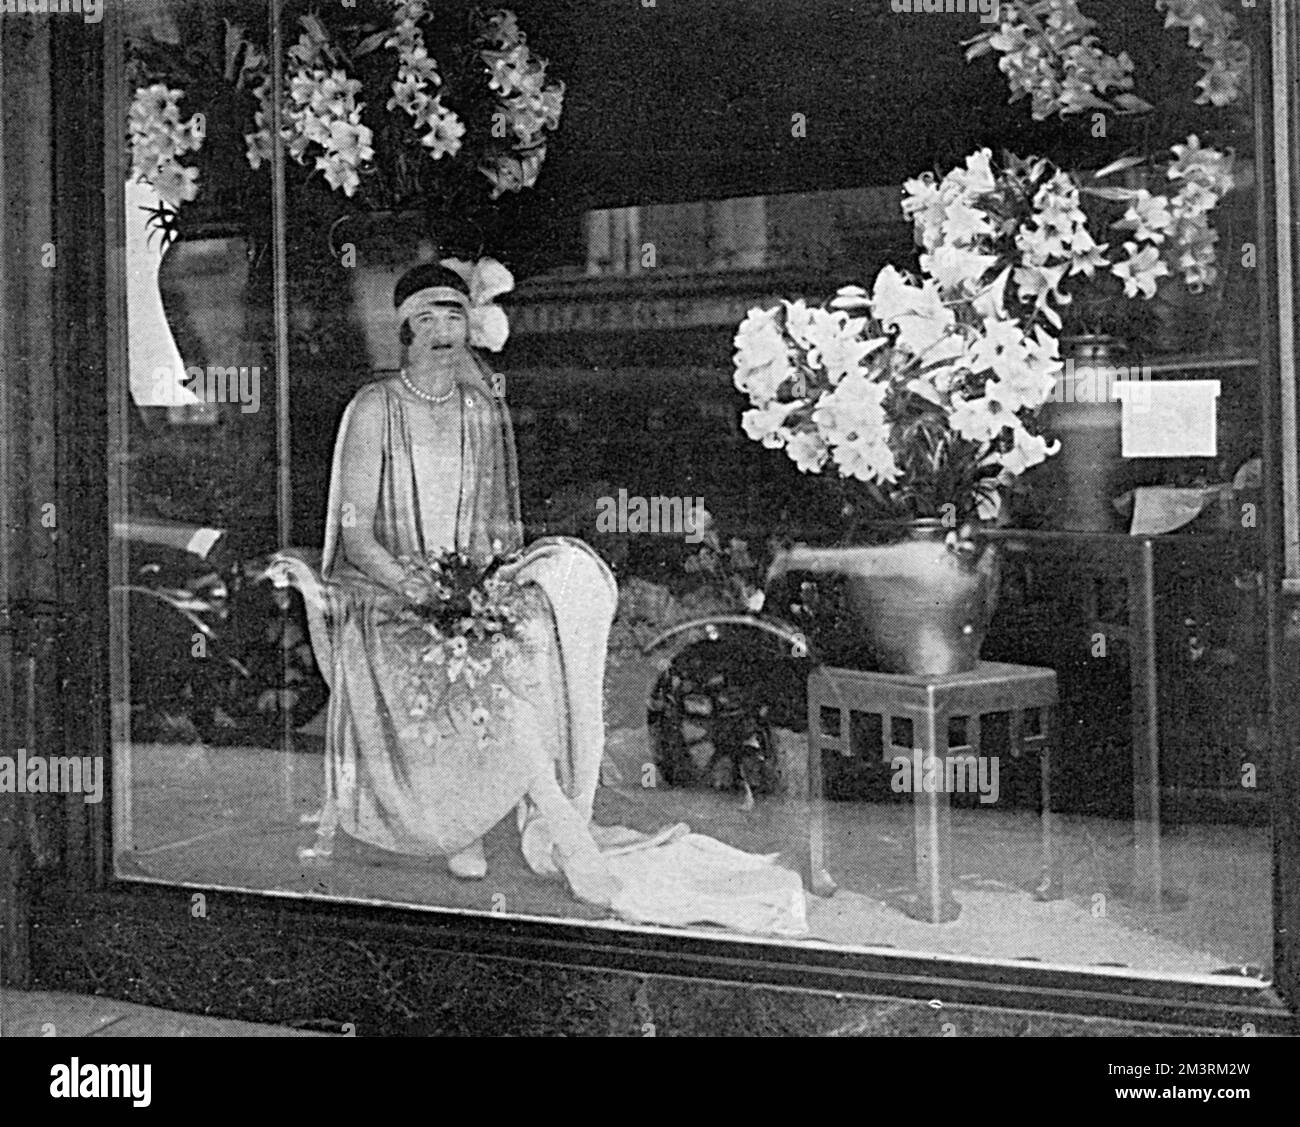 Eine neuartige Schaufensterausstellung in einem Geschäft in Knightsbridge, London, während der Sommersaison, zeigt eine junge Frau in einem Hofkleid mit Blumenstrauß und die traditionellen Federn, die für Hofpräsentationen getragen werden. Datum: 1928 Stockfoto